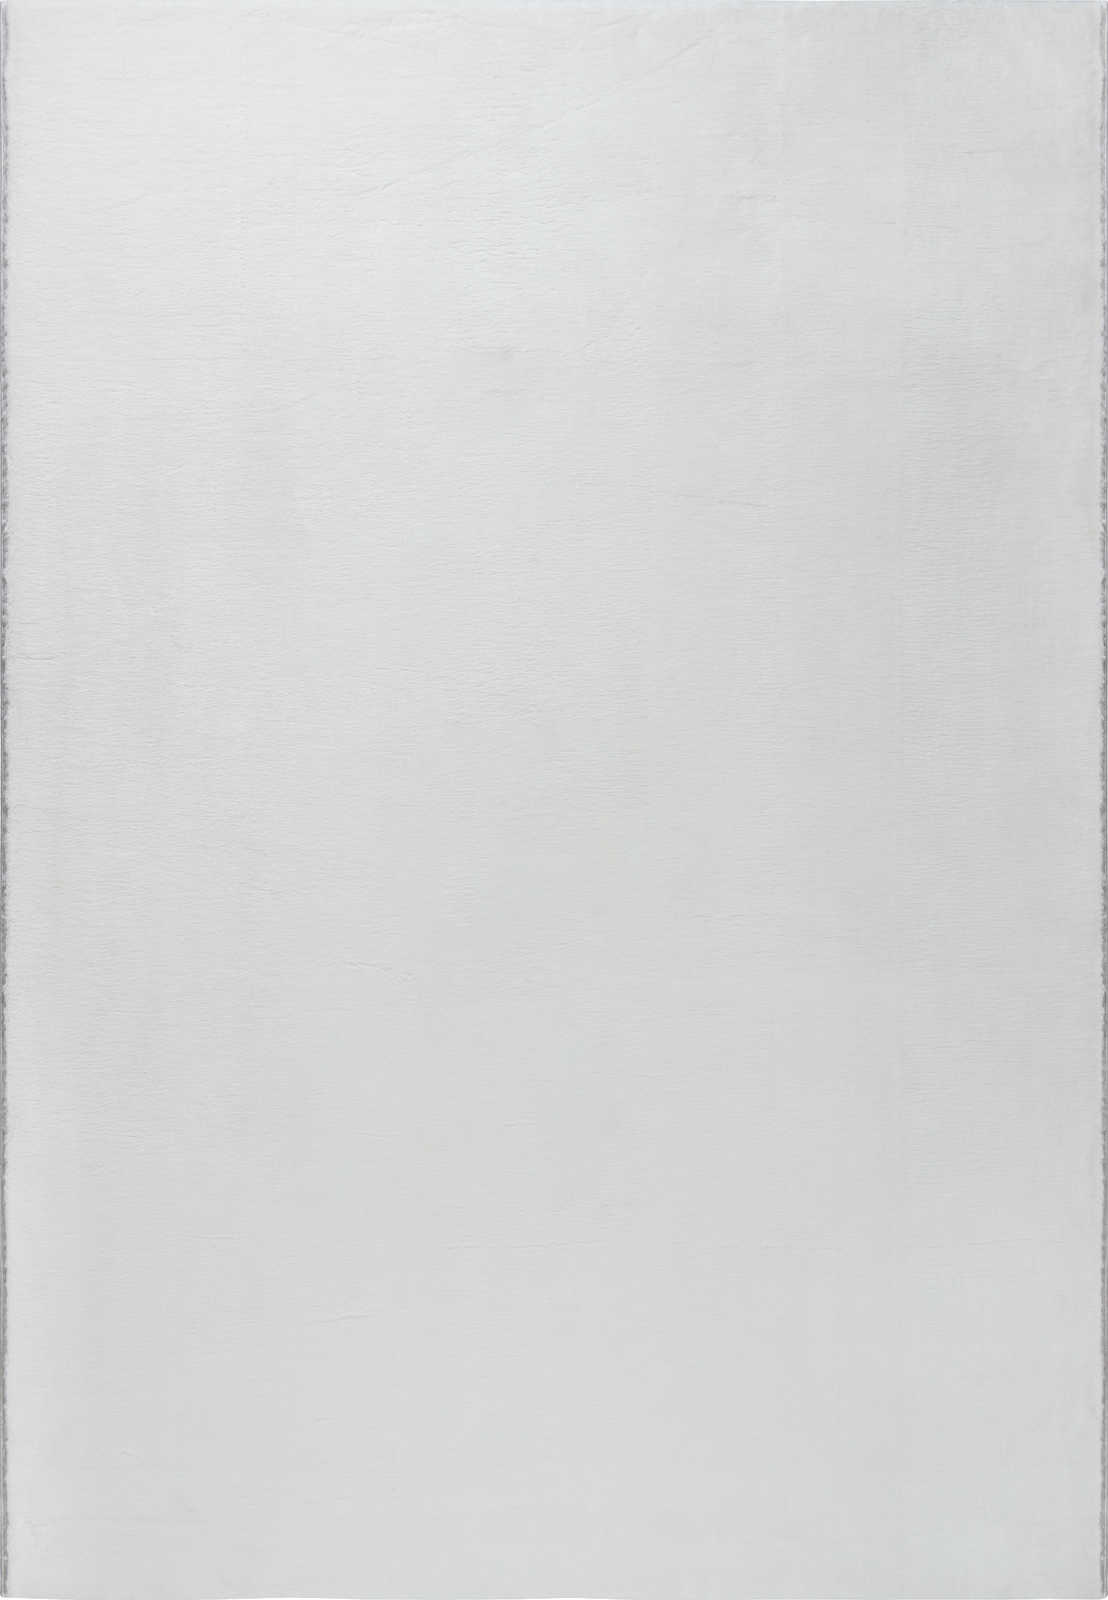             Flauschiger Hochflor Teppich in angenehmen Creme – 150 x 80 cm
        